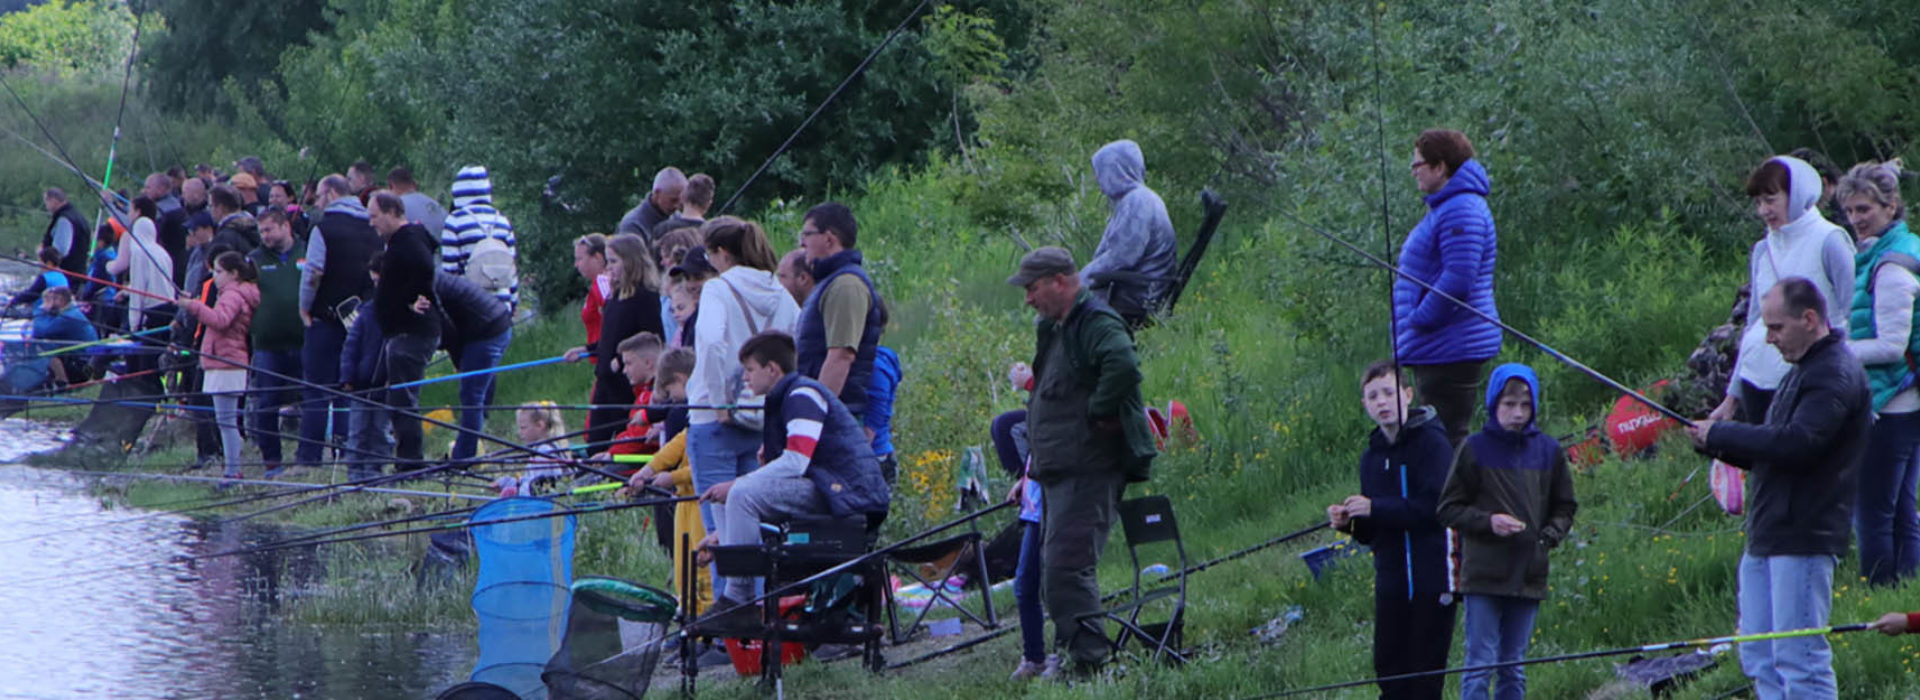 Rekordkísérlet a gyermeknapi horgászversenyen Esztergomban